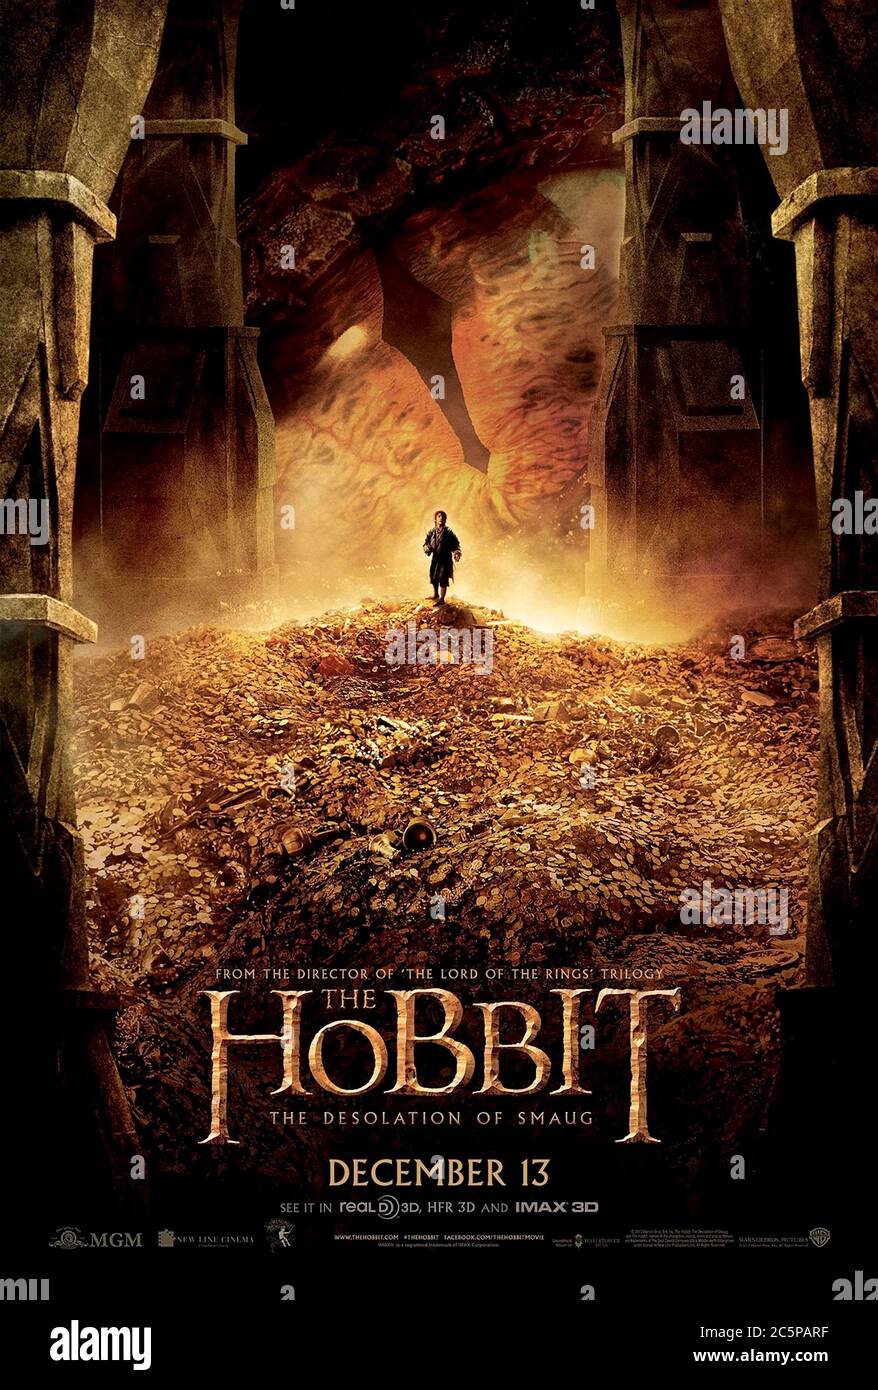 El Hobbit: La desolación de Smaug (2013) dirigida por Peter Jackson y protagonizada por Ian McKellen, Martin Freeman, Richard Armitage y James Nesbitt. Segunda parte de la trilogía basada en el libro de J. R. R. Tolkien The Hobbit, Bilbo Baggins se une a los enanos en su lucha contra el dragón Smaug. Foto de stock